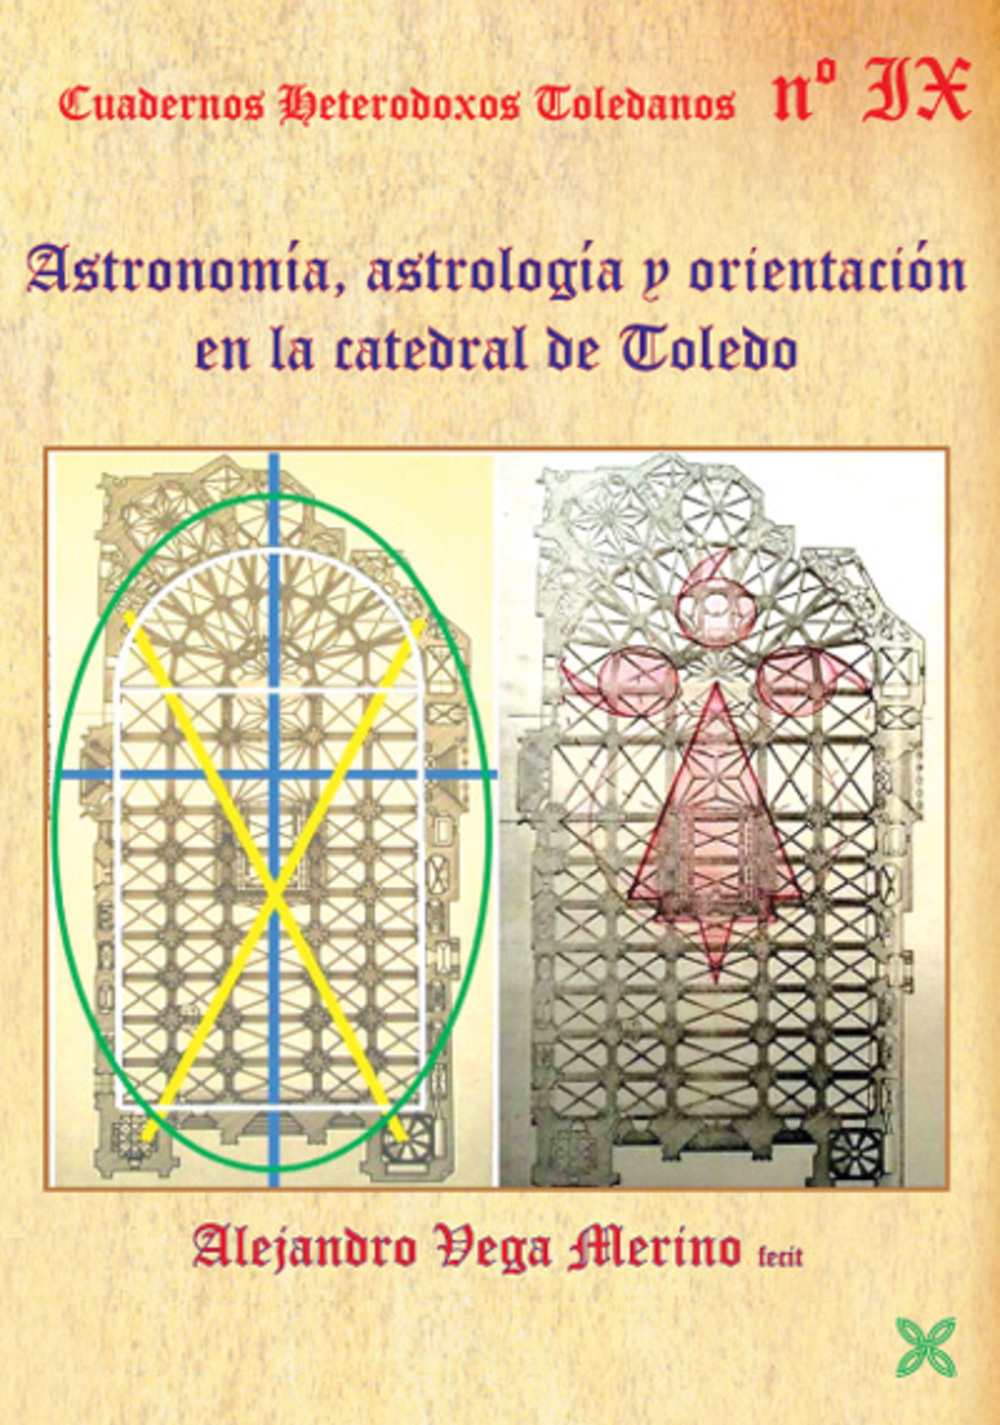 Historia de la Catedral A través de la astronomía